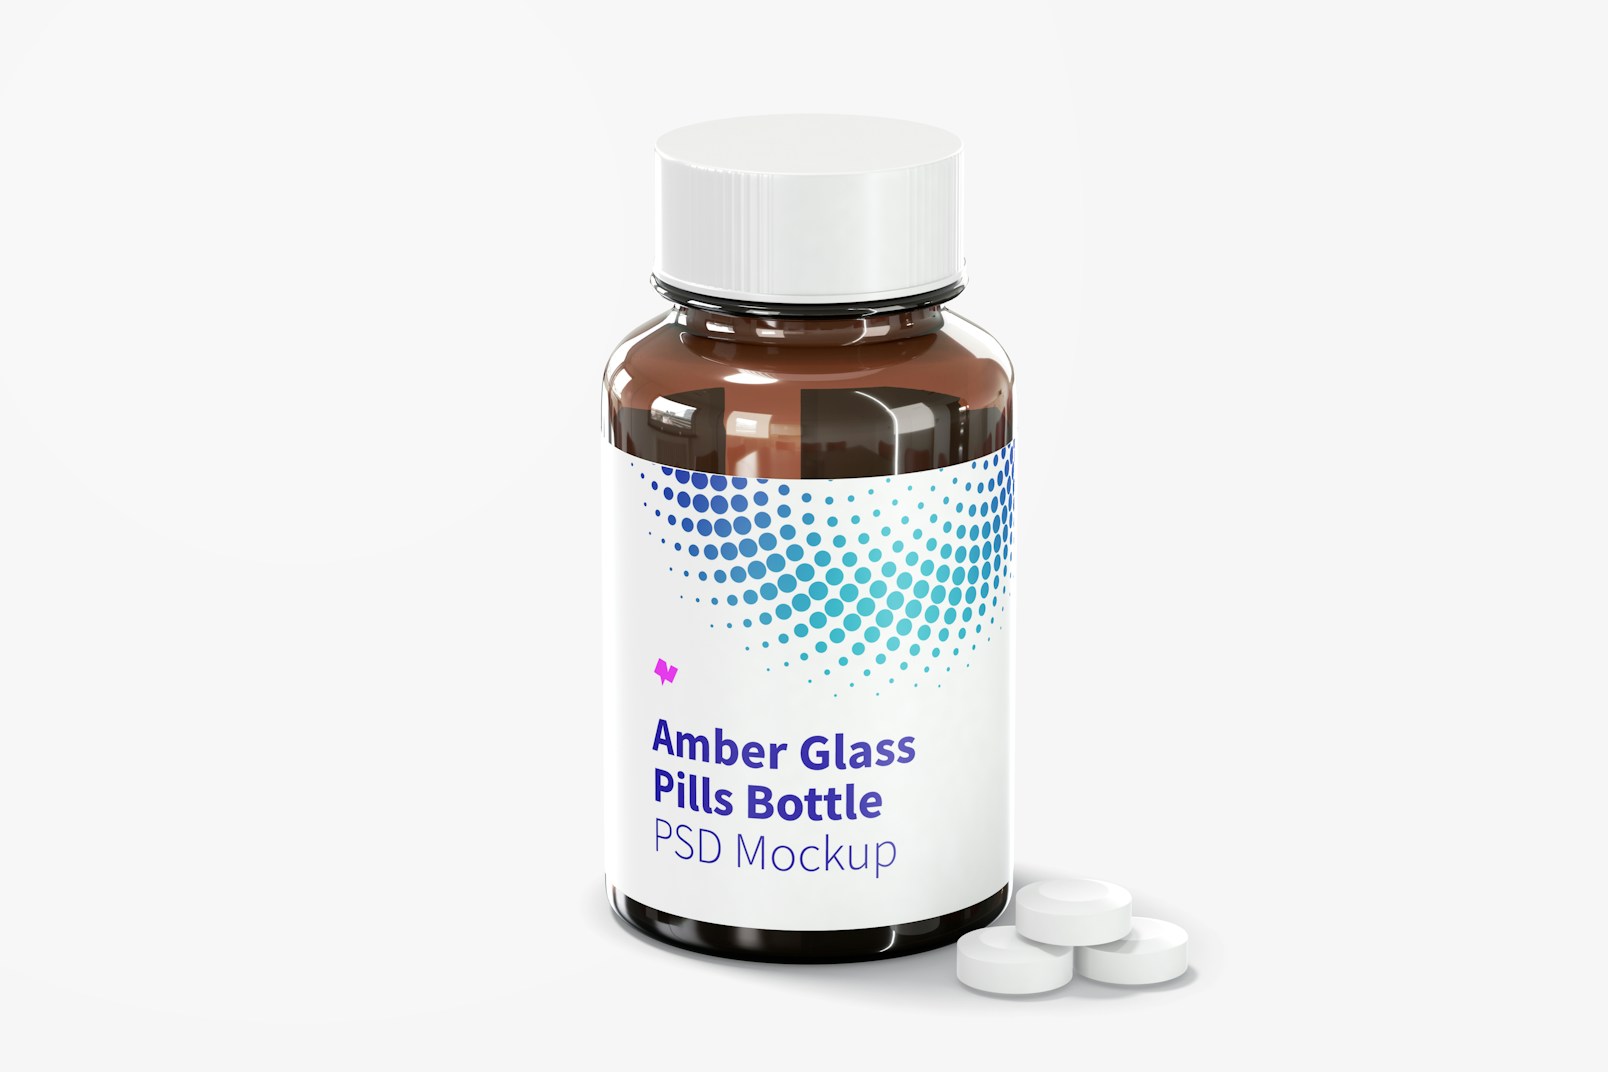 Amber Glass Pills Bottle Mockup